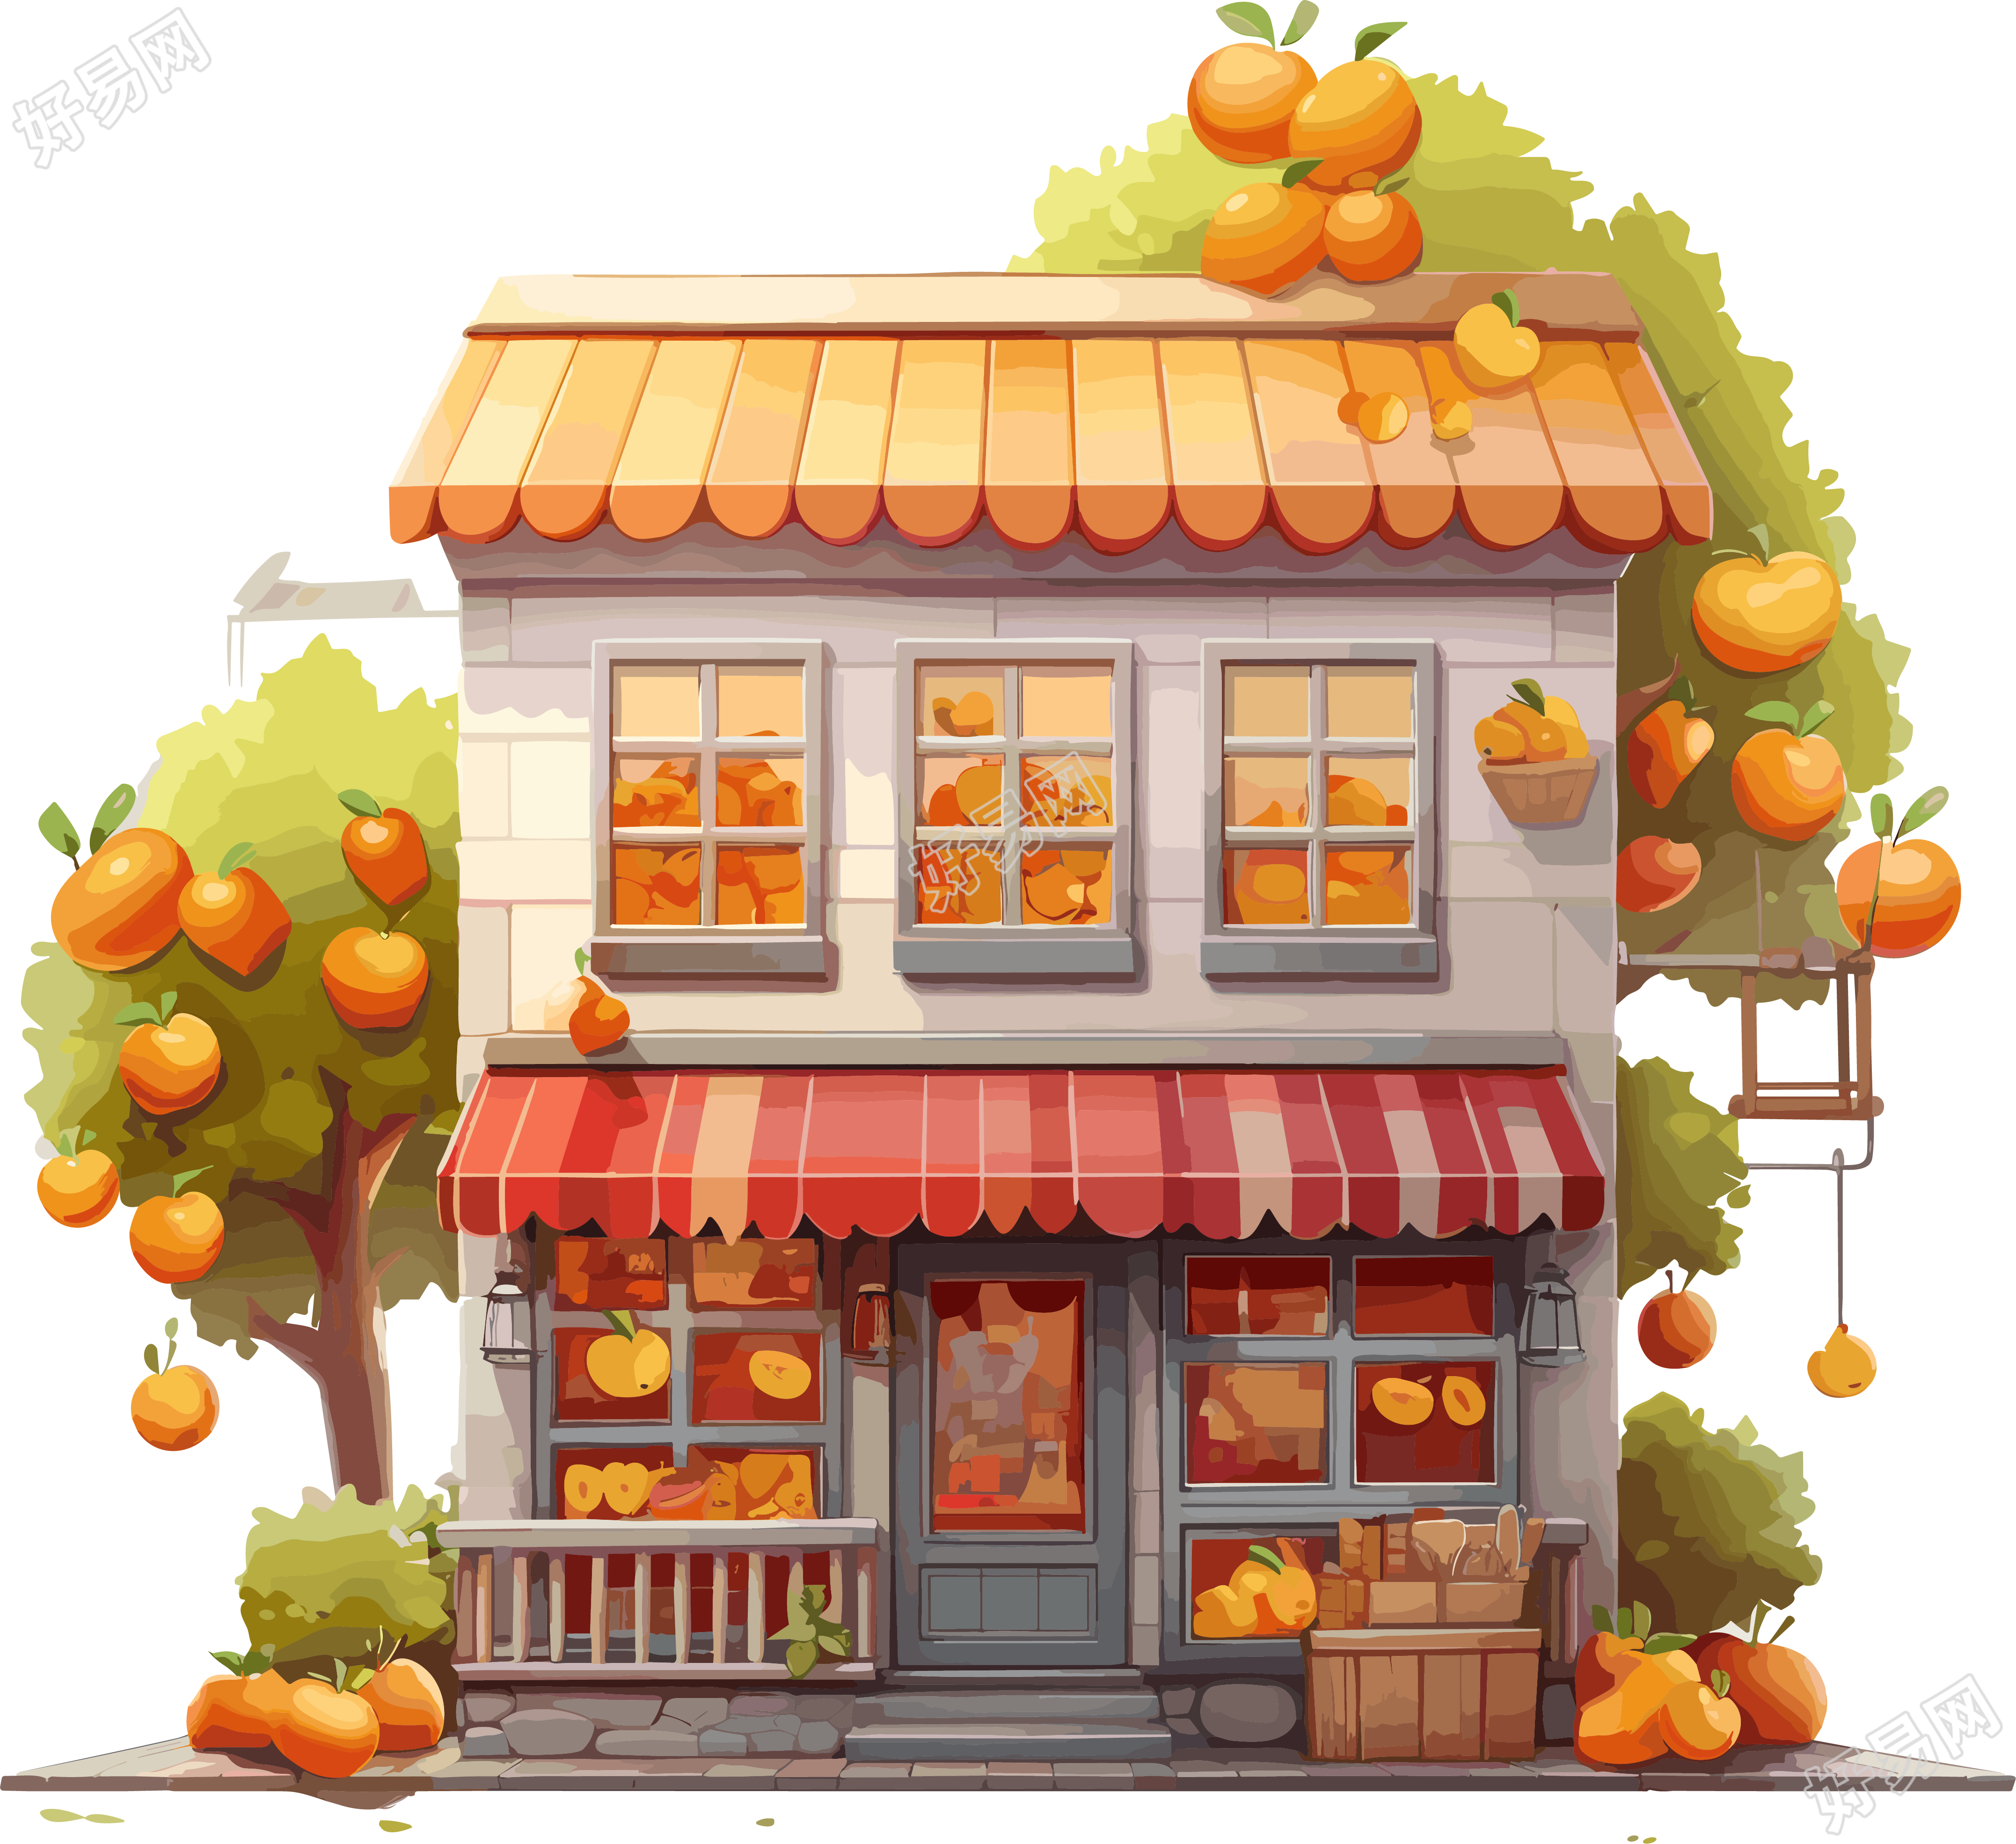 古典建筑风格的秋季水果店高清图形素材